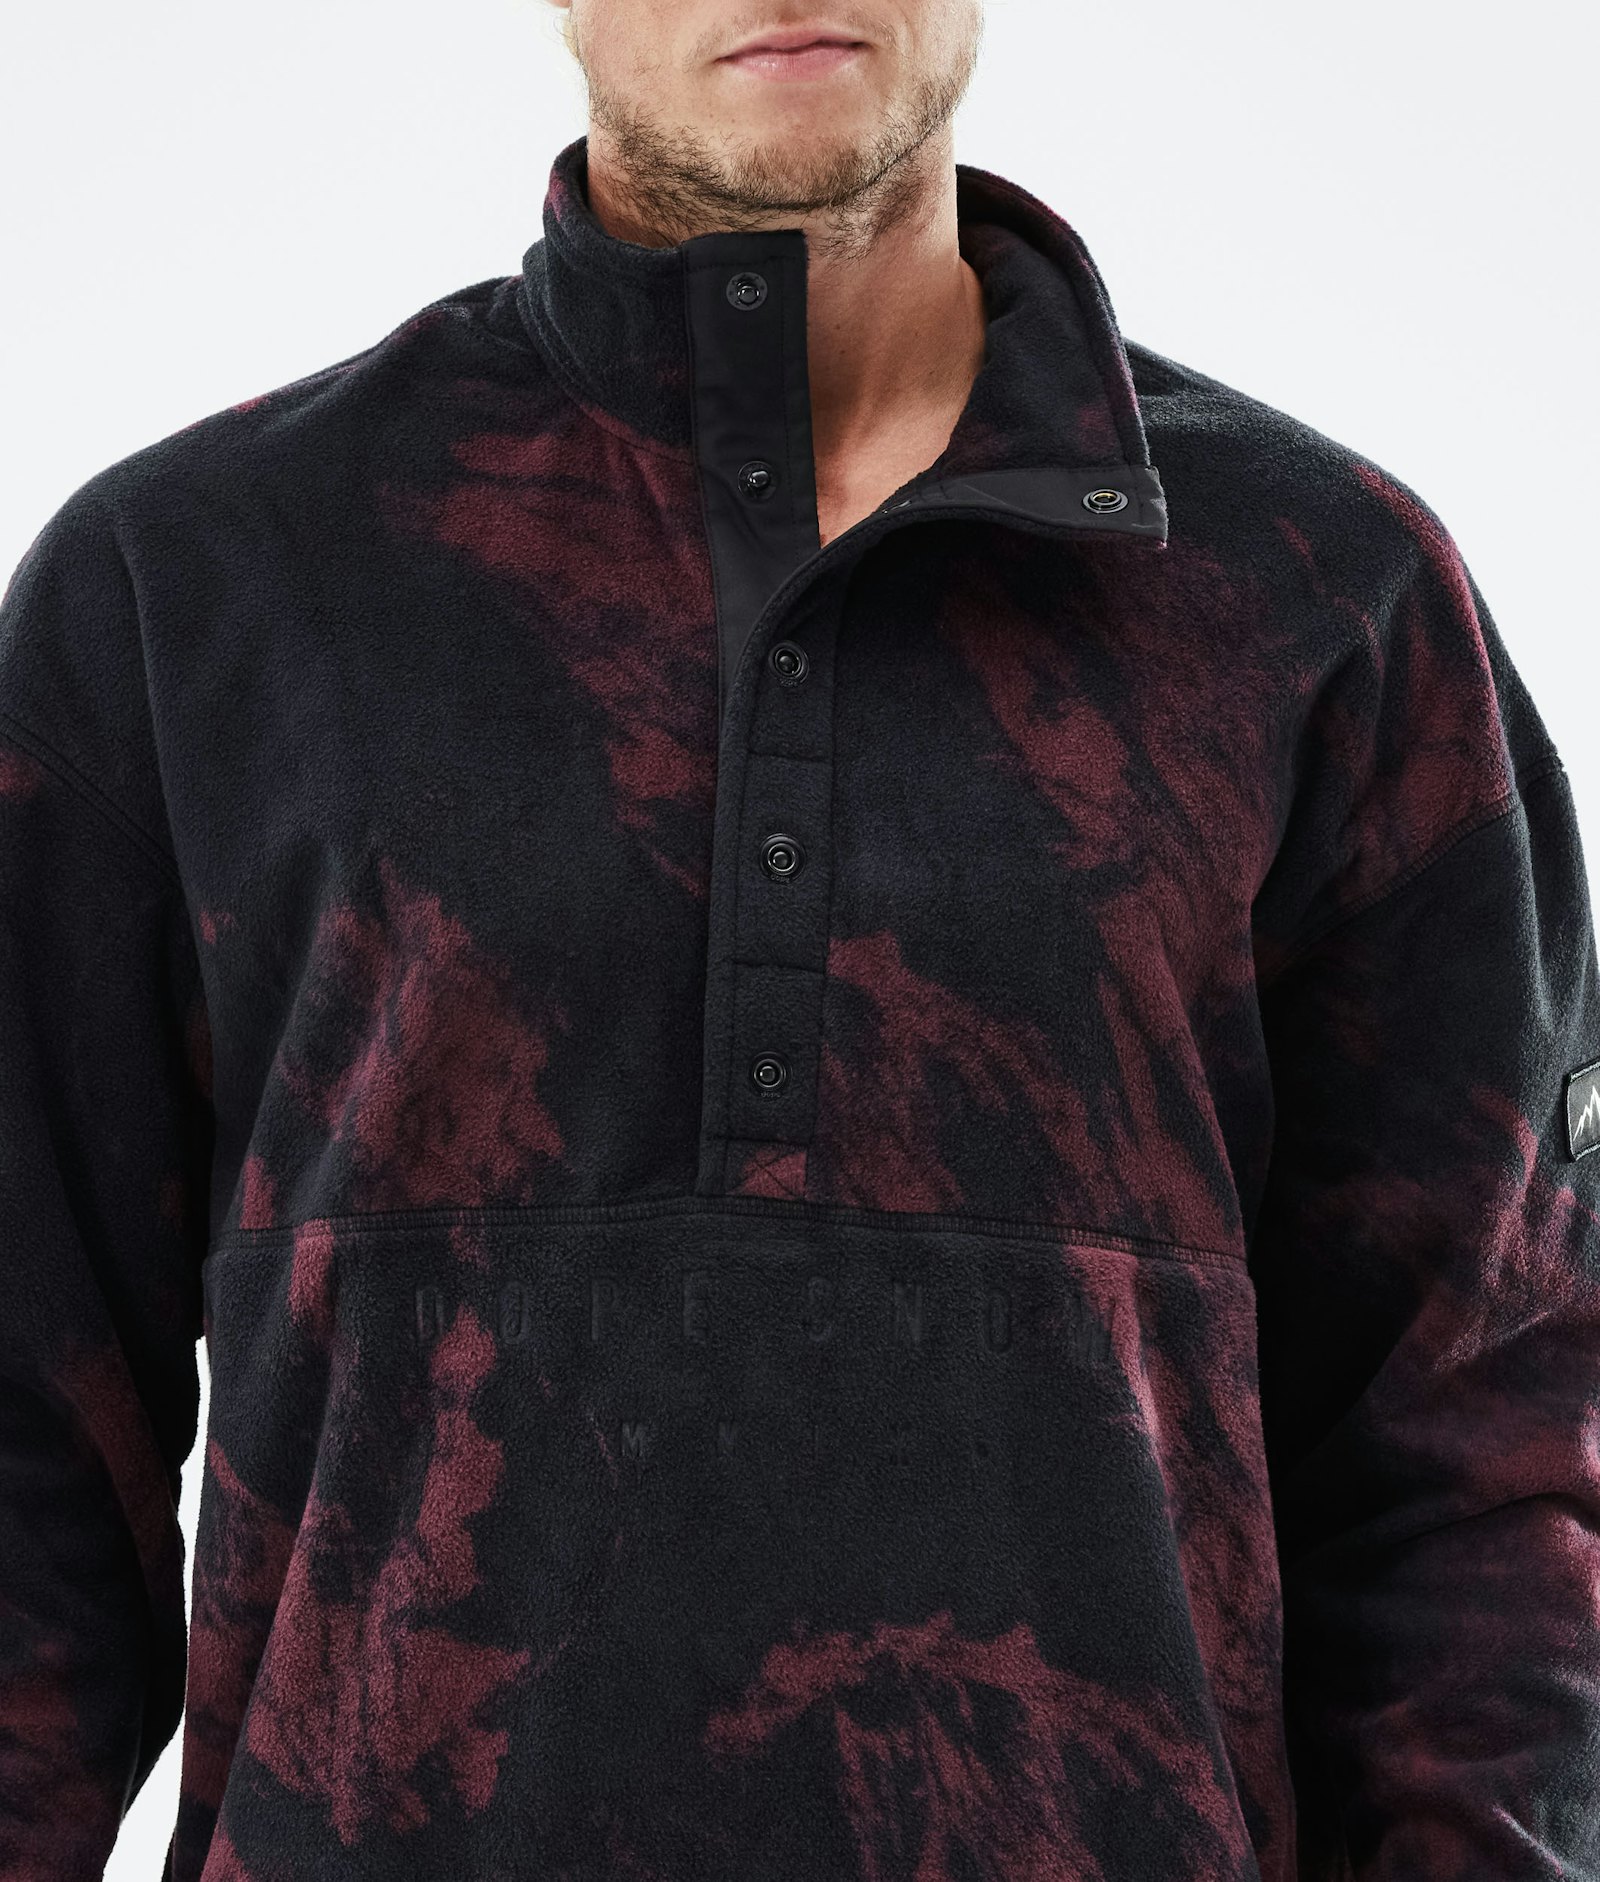 Comfy 2021 Fleece Sweater Men Paint Burgundy